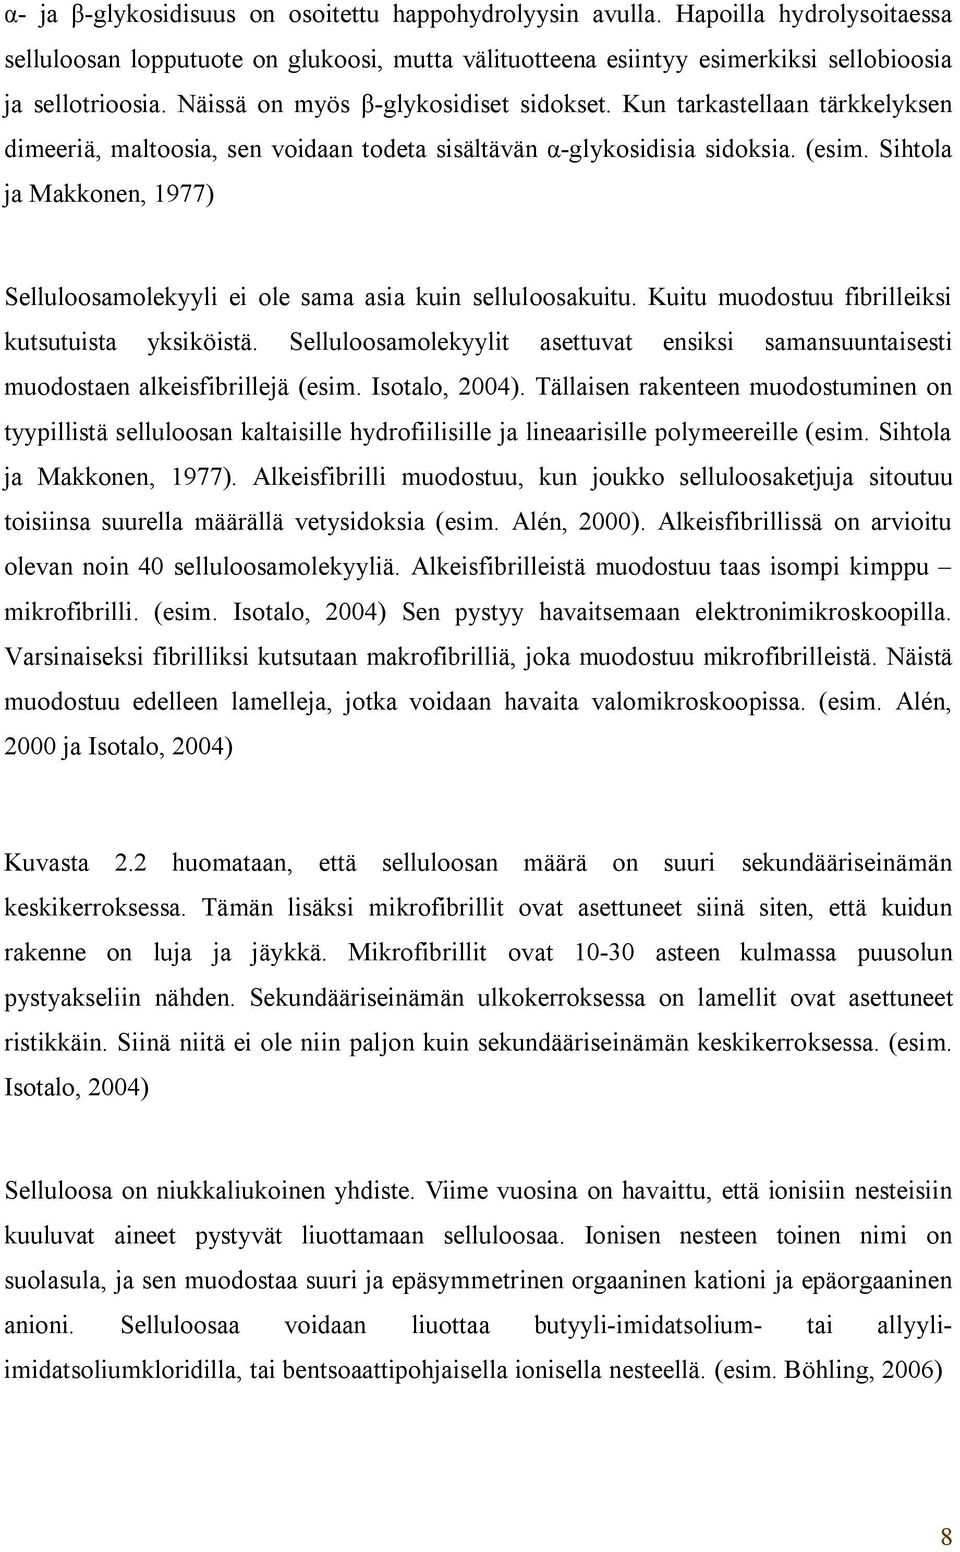 Sihtola ja Makkonen, 1977) Selluloosamolekyyli ei ole sama asia kuin selluloosakuitu. Kuitu muodostuu fibrilleiksi kutsutuista yksiköistä.